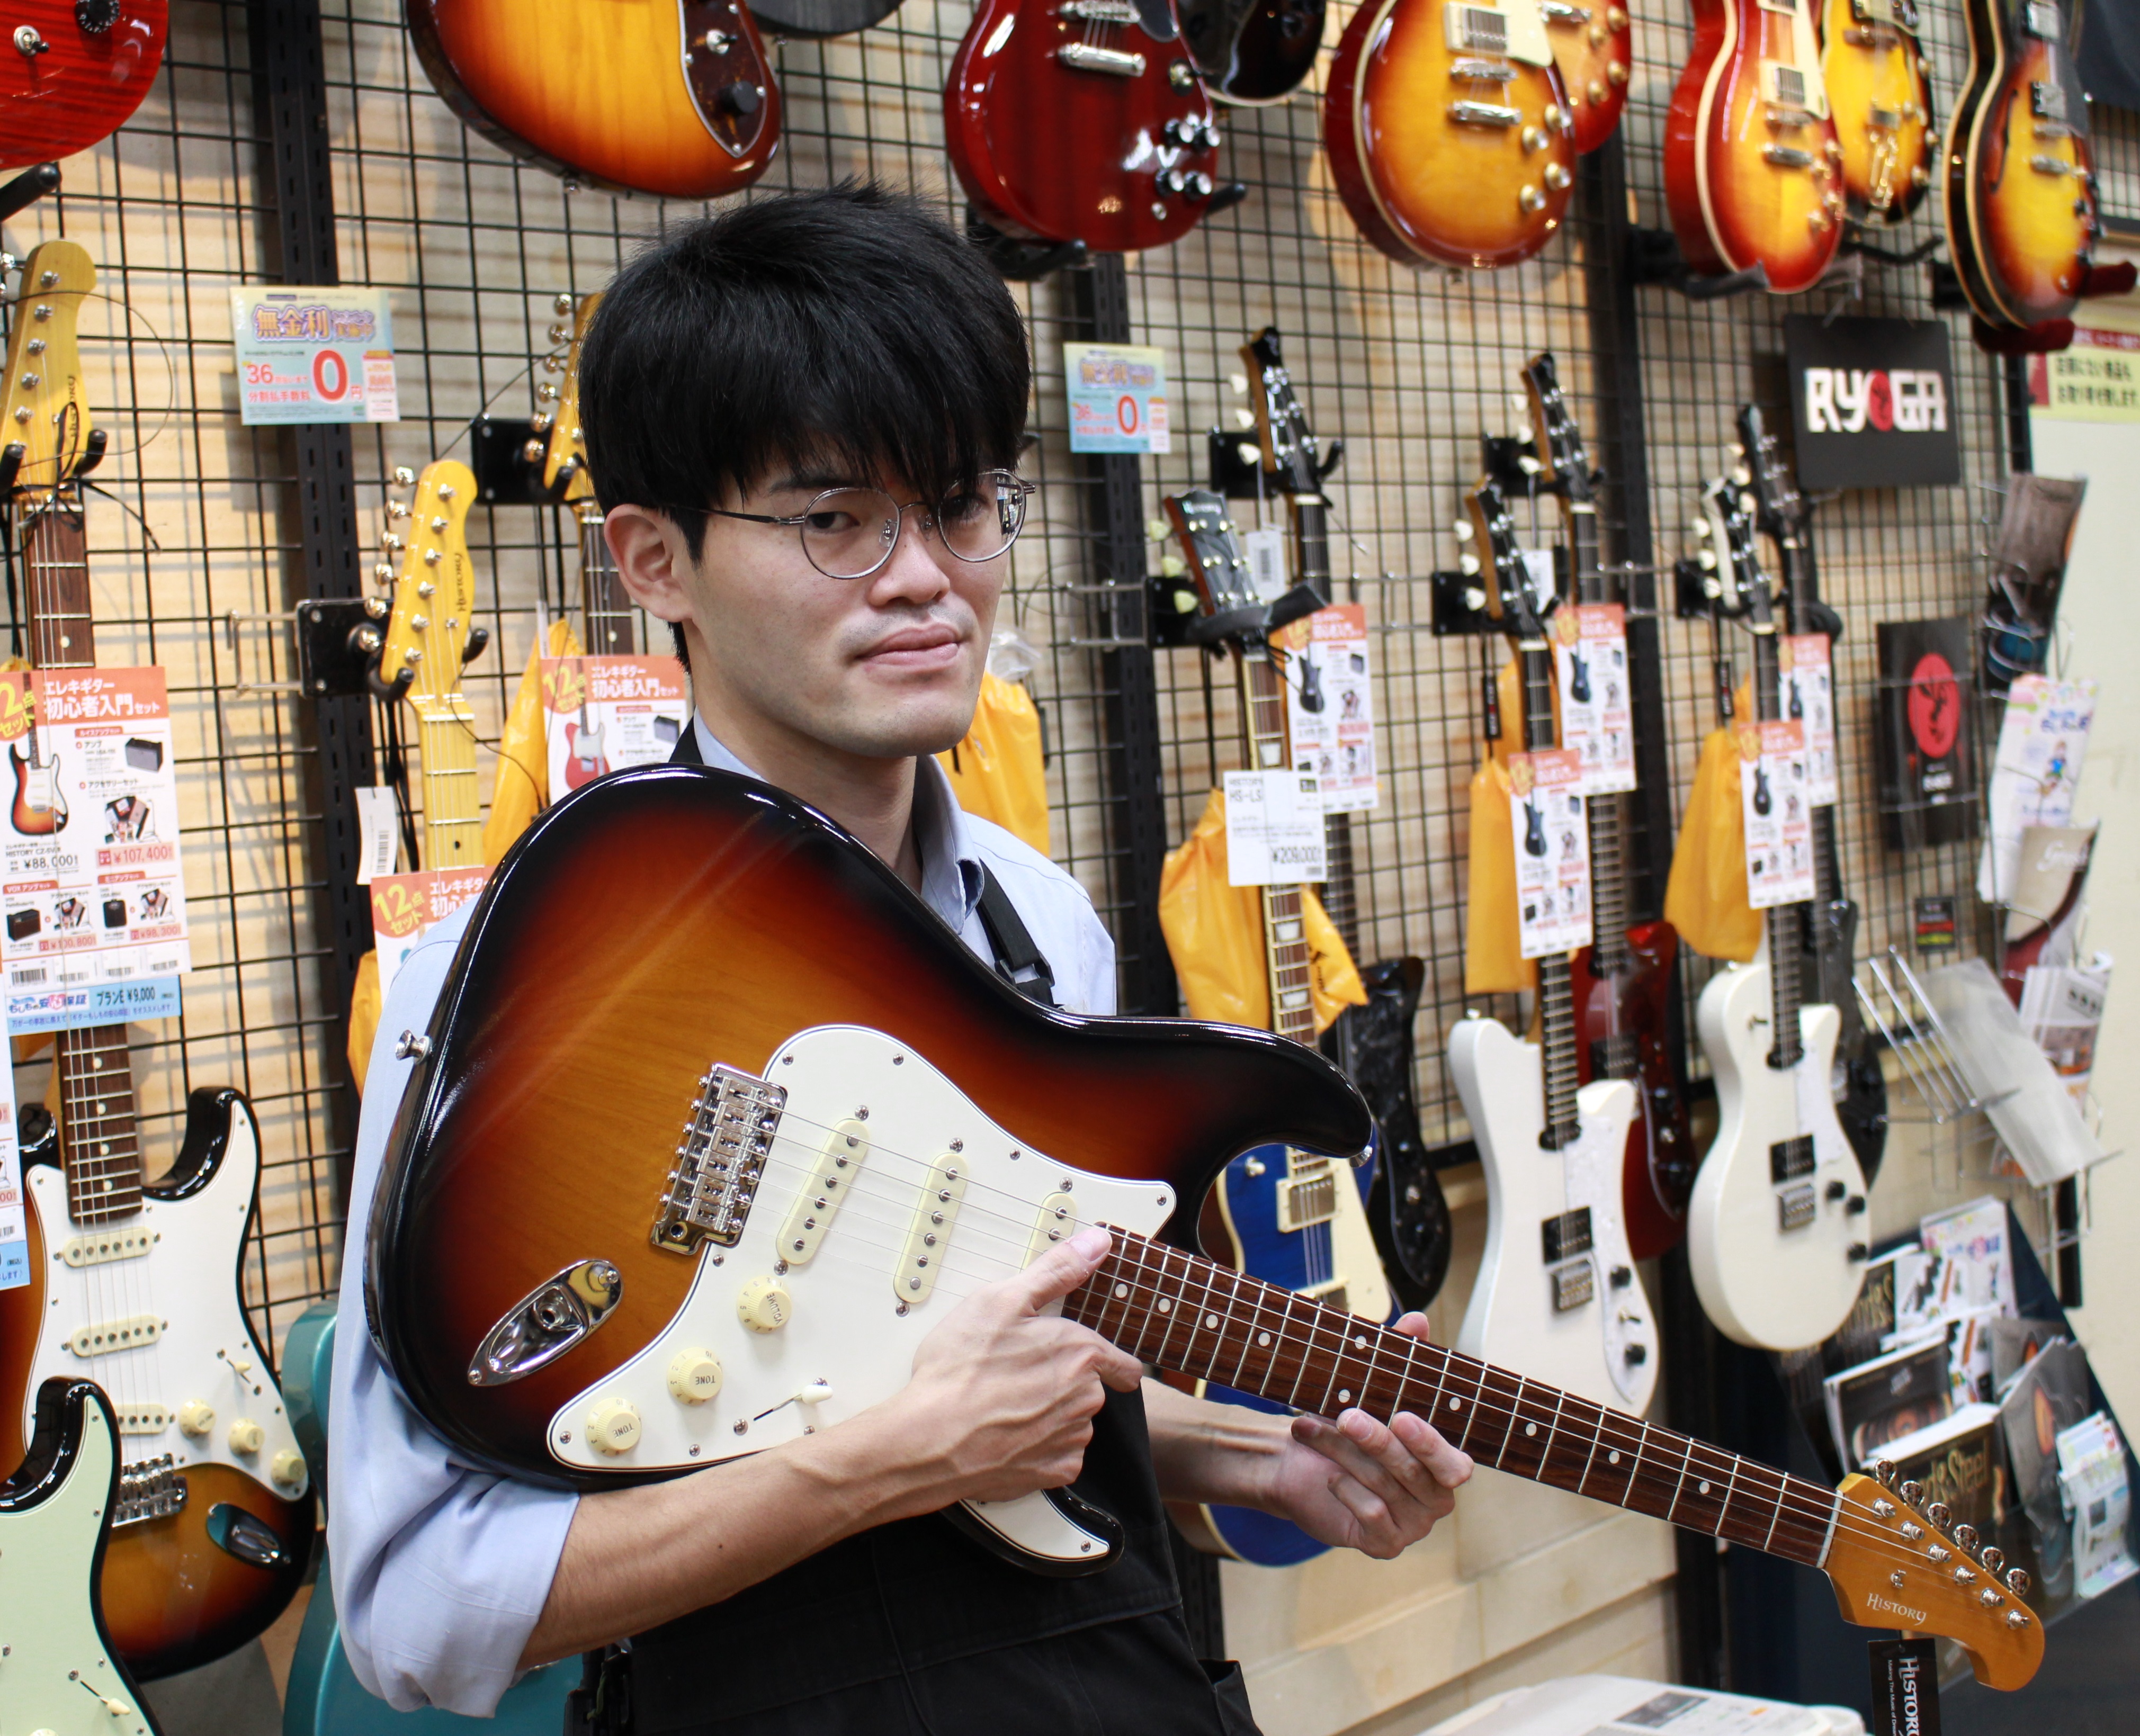 【スタッフ紹介】四日市店のギター担当伊藤はこんな人